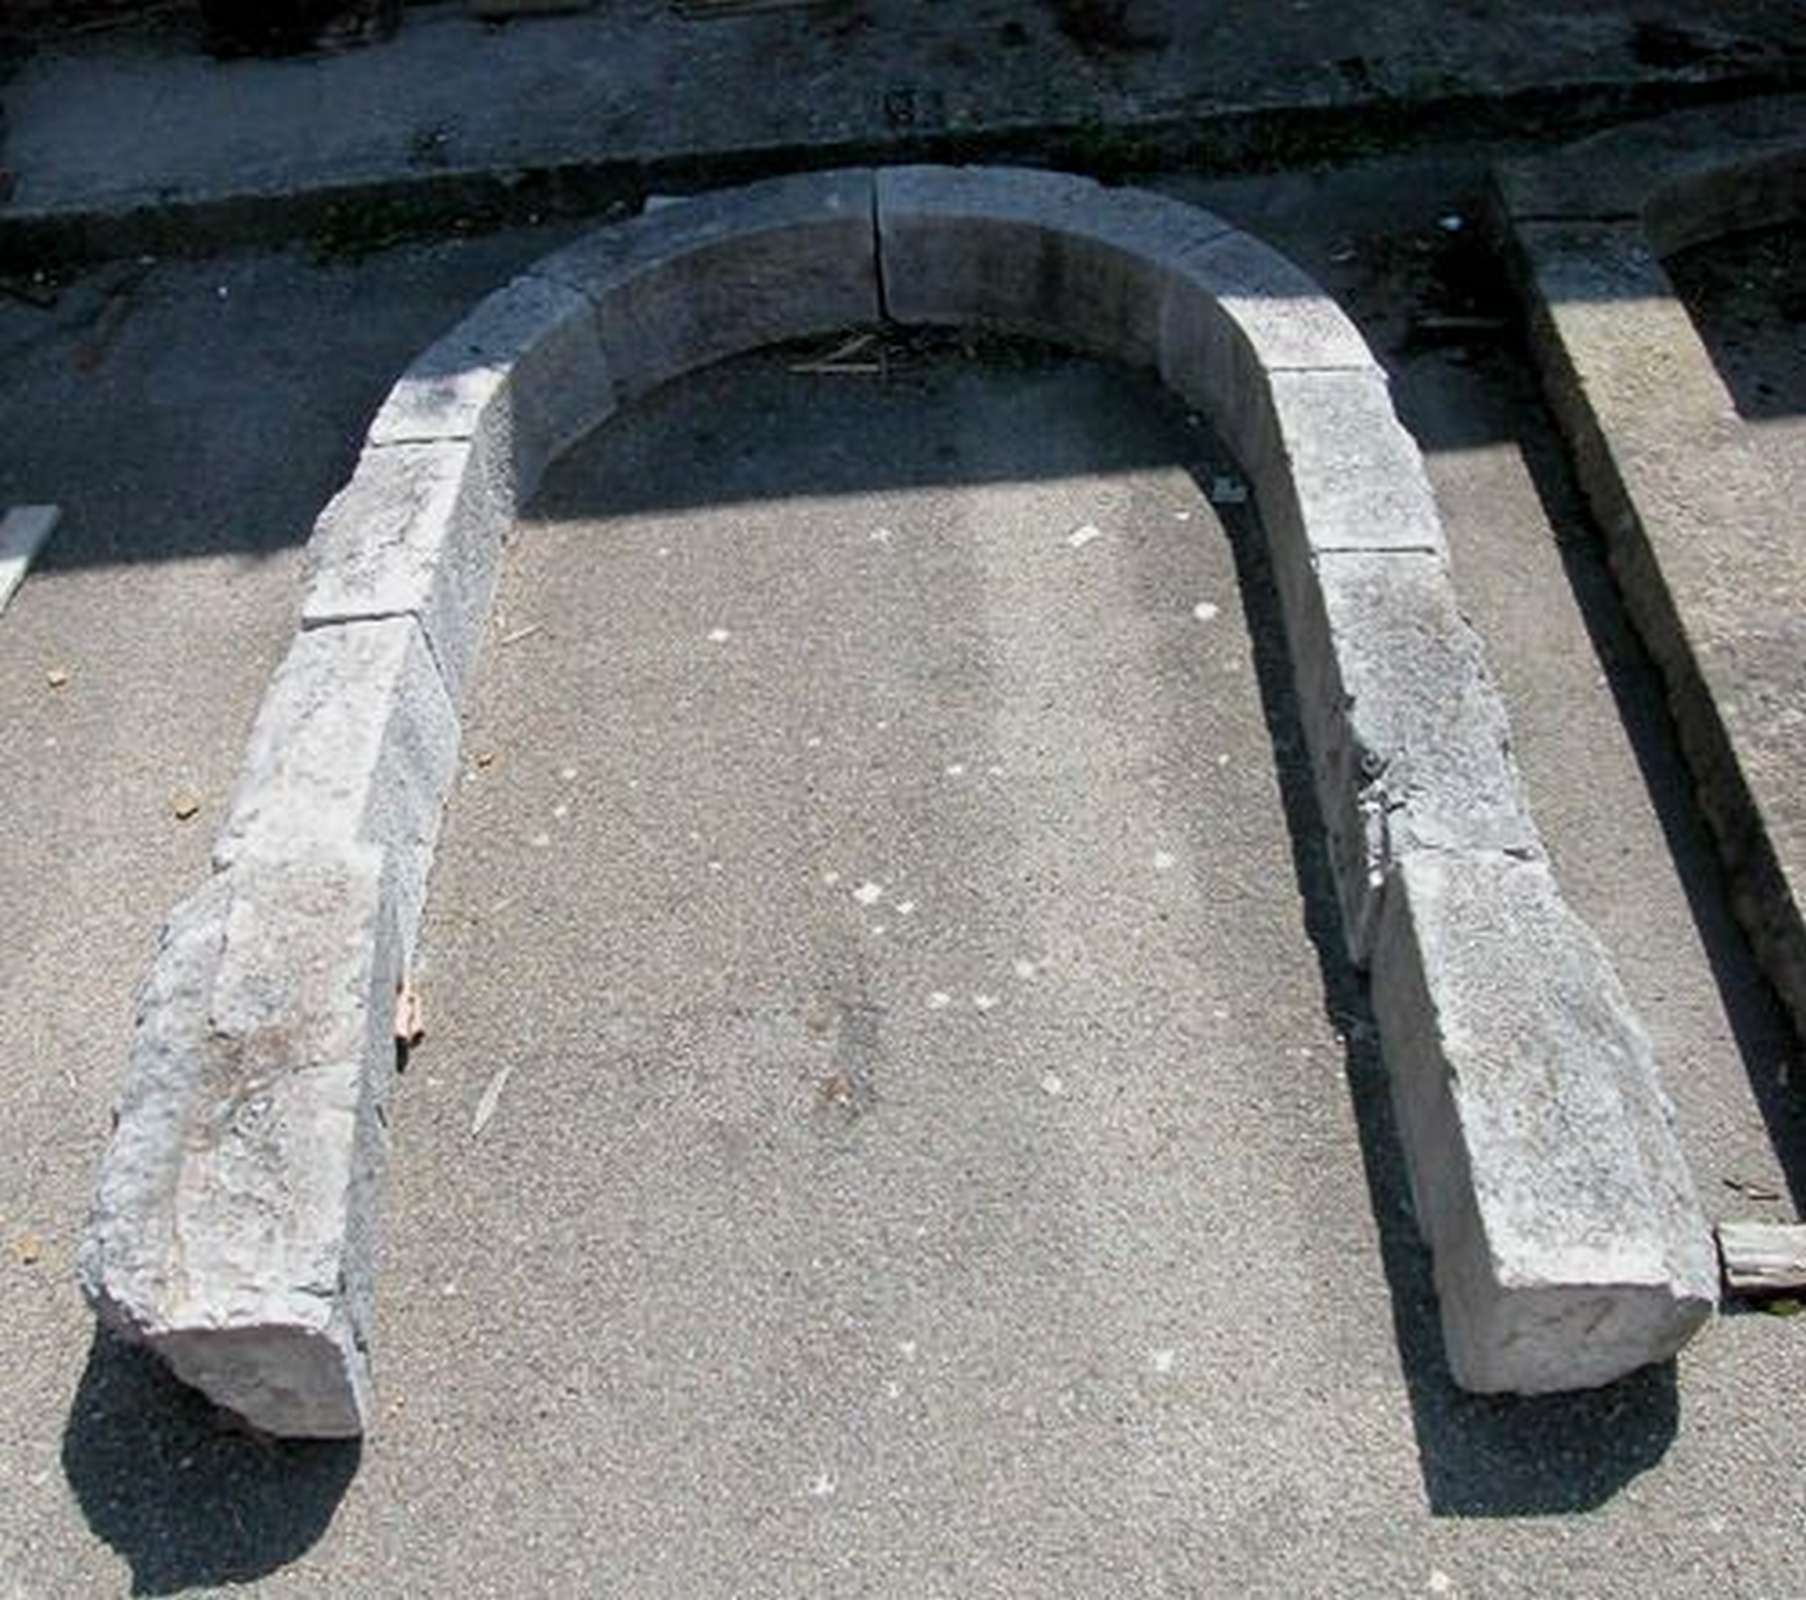 Antico portale in pietra - Portali, Finestre e Cornici - Architettura - Prodotti - Antichità Fiorillo